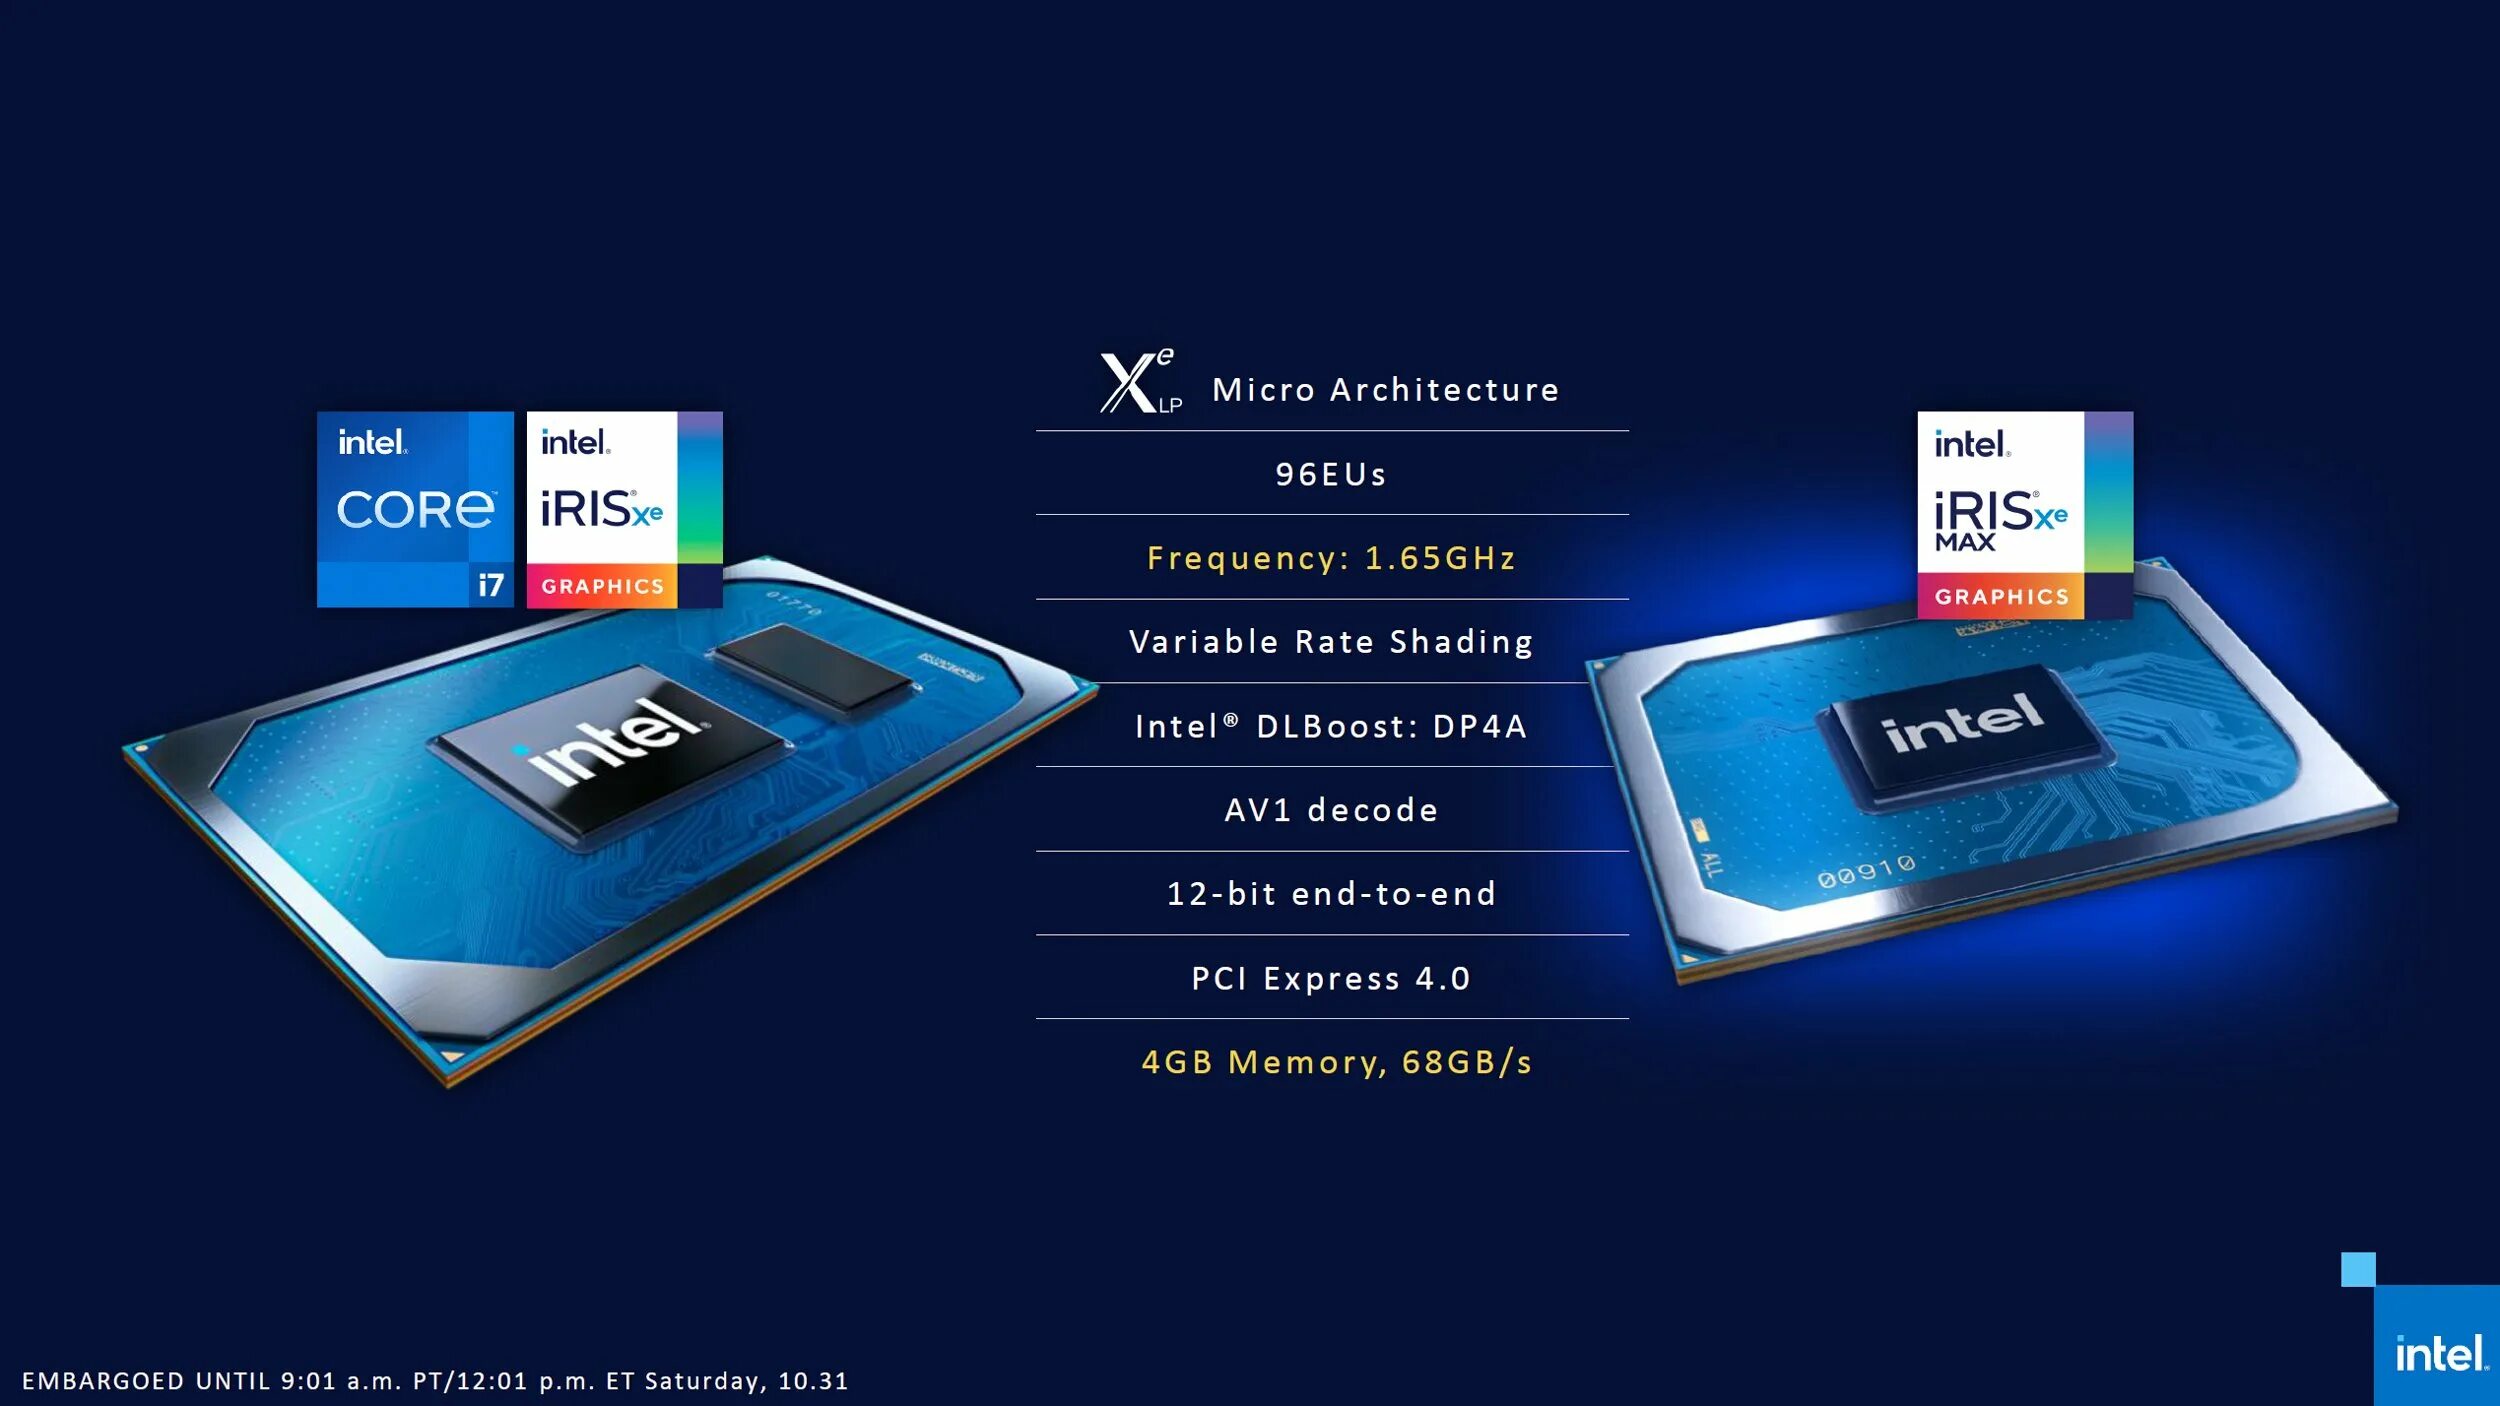 Graphics xe 24eus. Видеокарта Intel Iris Graphics. Видеокарта Intel Iris xe. Intel Iris xe Graphics видеокарта. Intel Iris xe Graphics характеристики видеокарты.